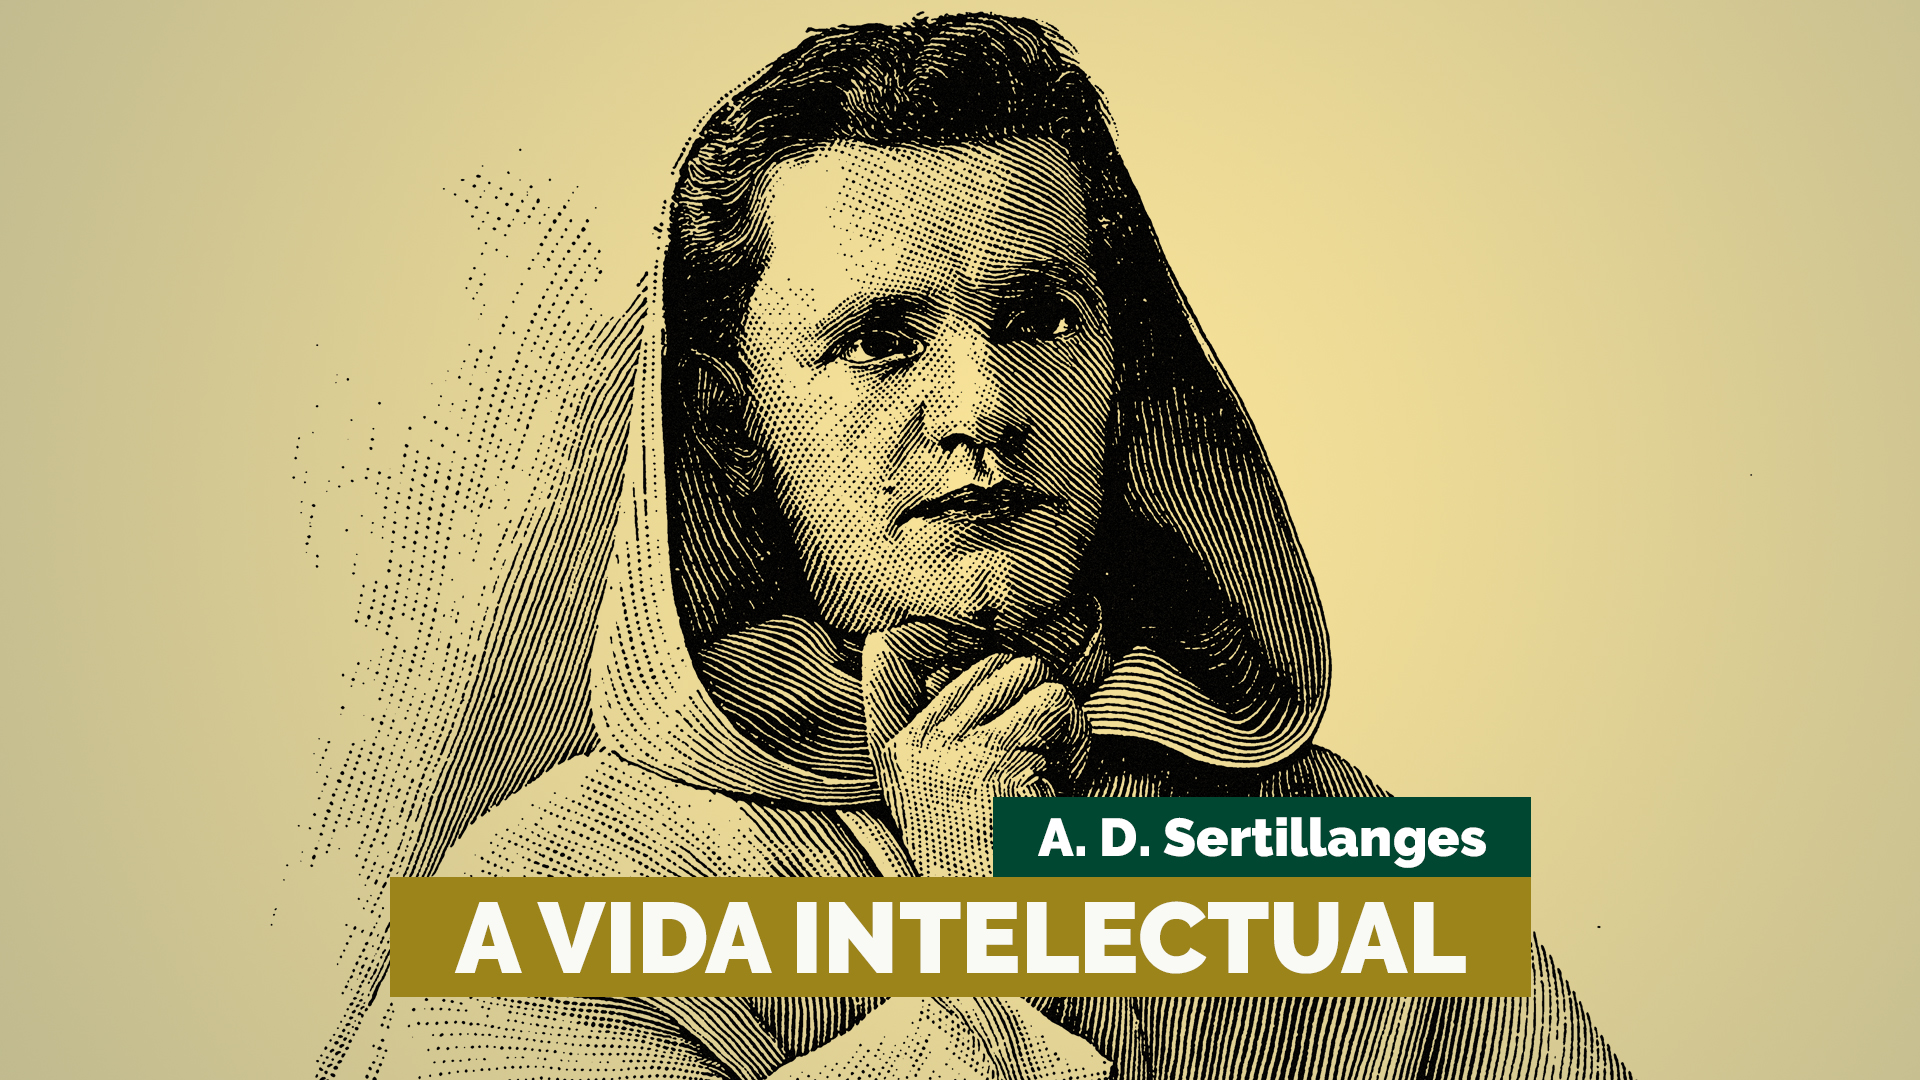 A vida intelectual — A. D. Sertillanges